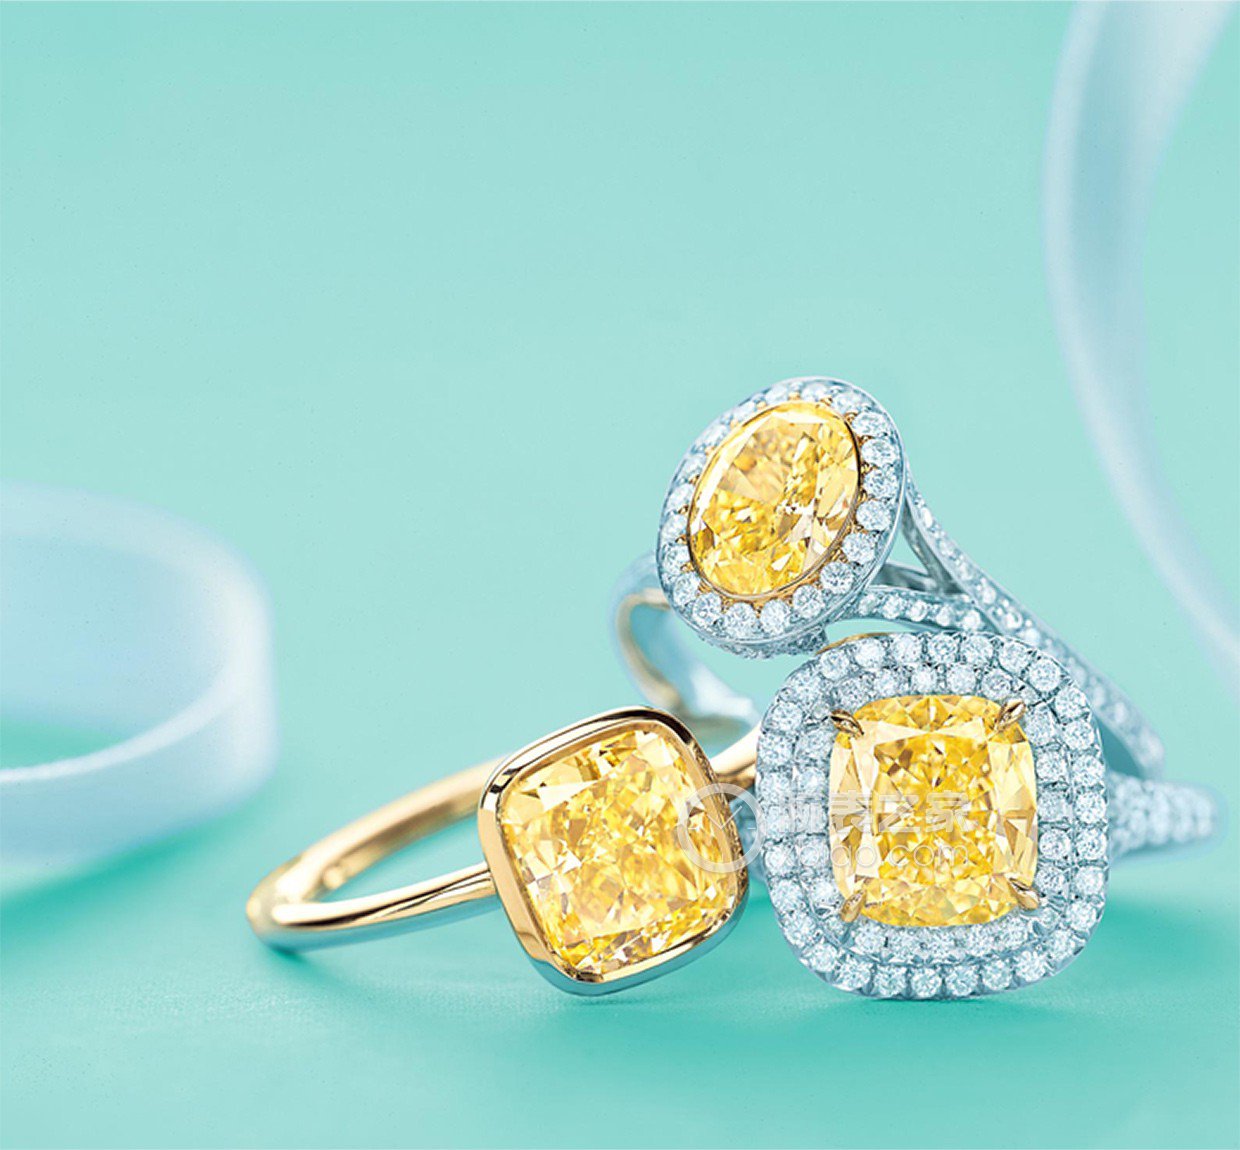 蒂芙尼订婚钻戒铂金镶钻戒圈，珠链式边镶钻石环绕椭圆形钻石订婚钻戒戒指